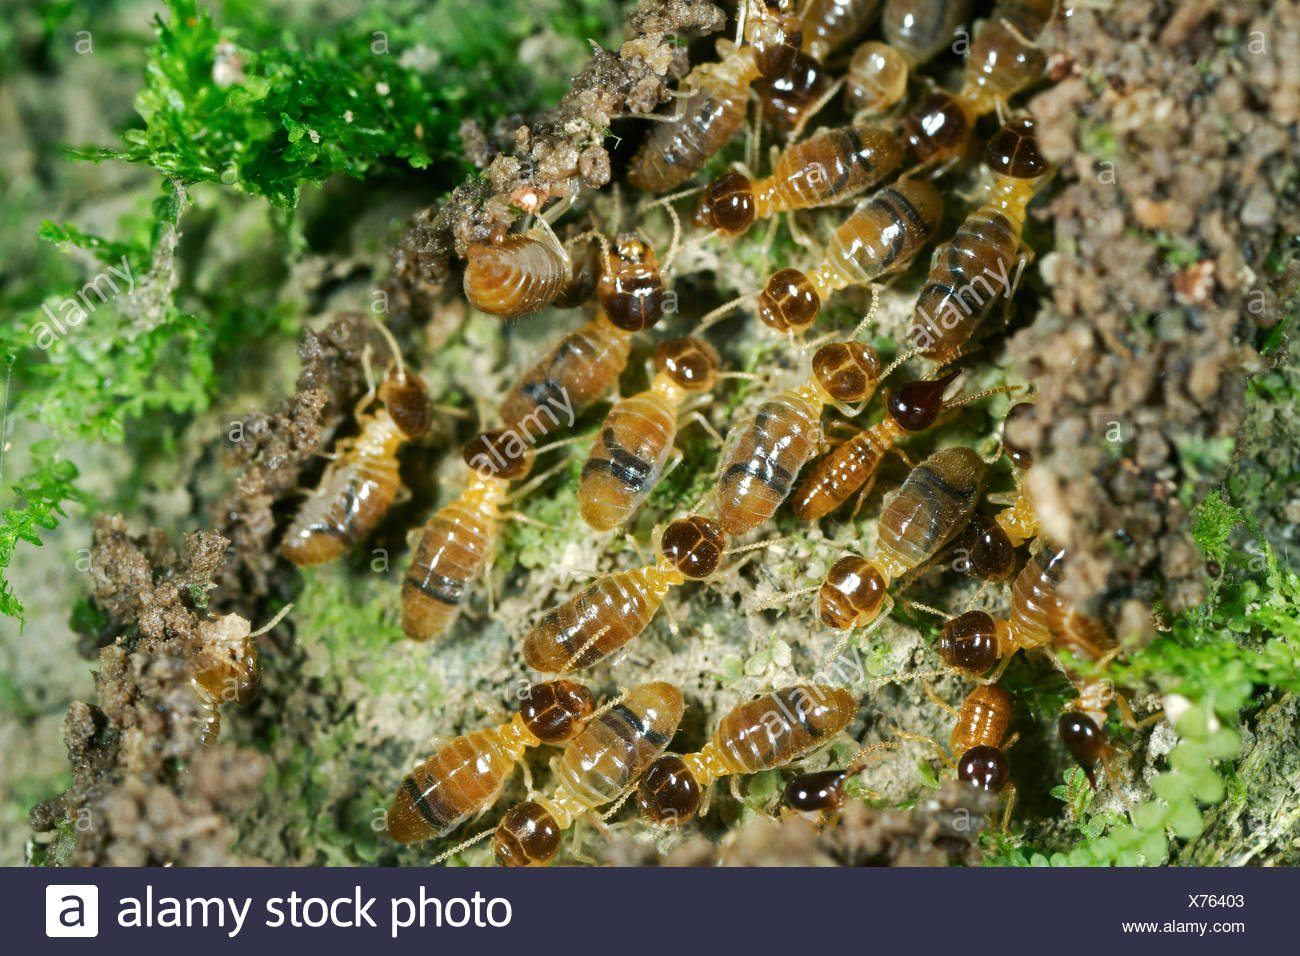 liquid defense termites